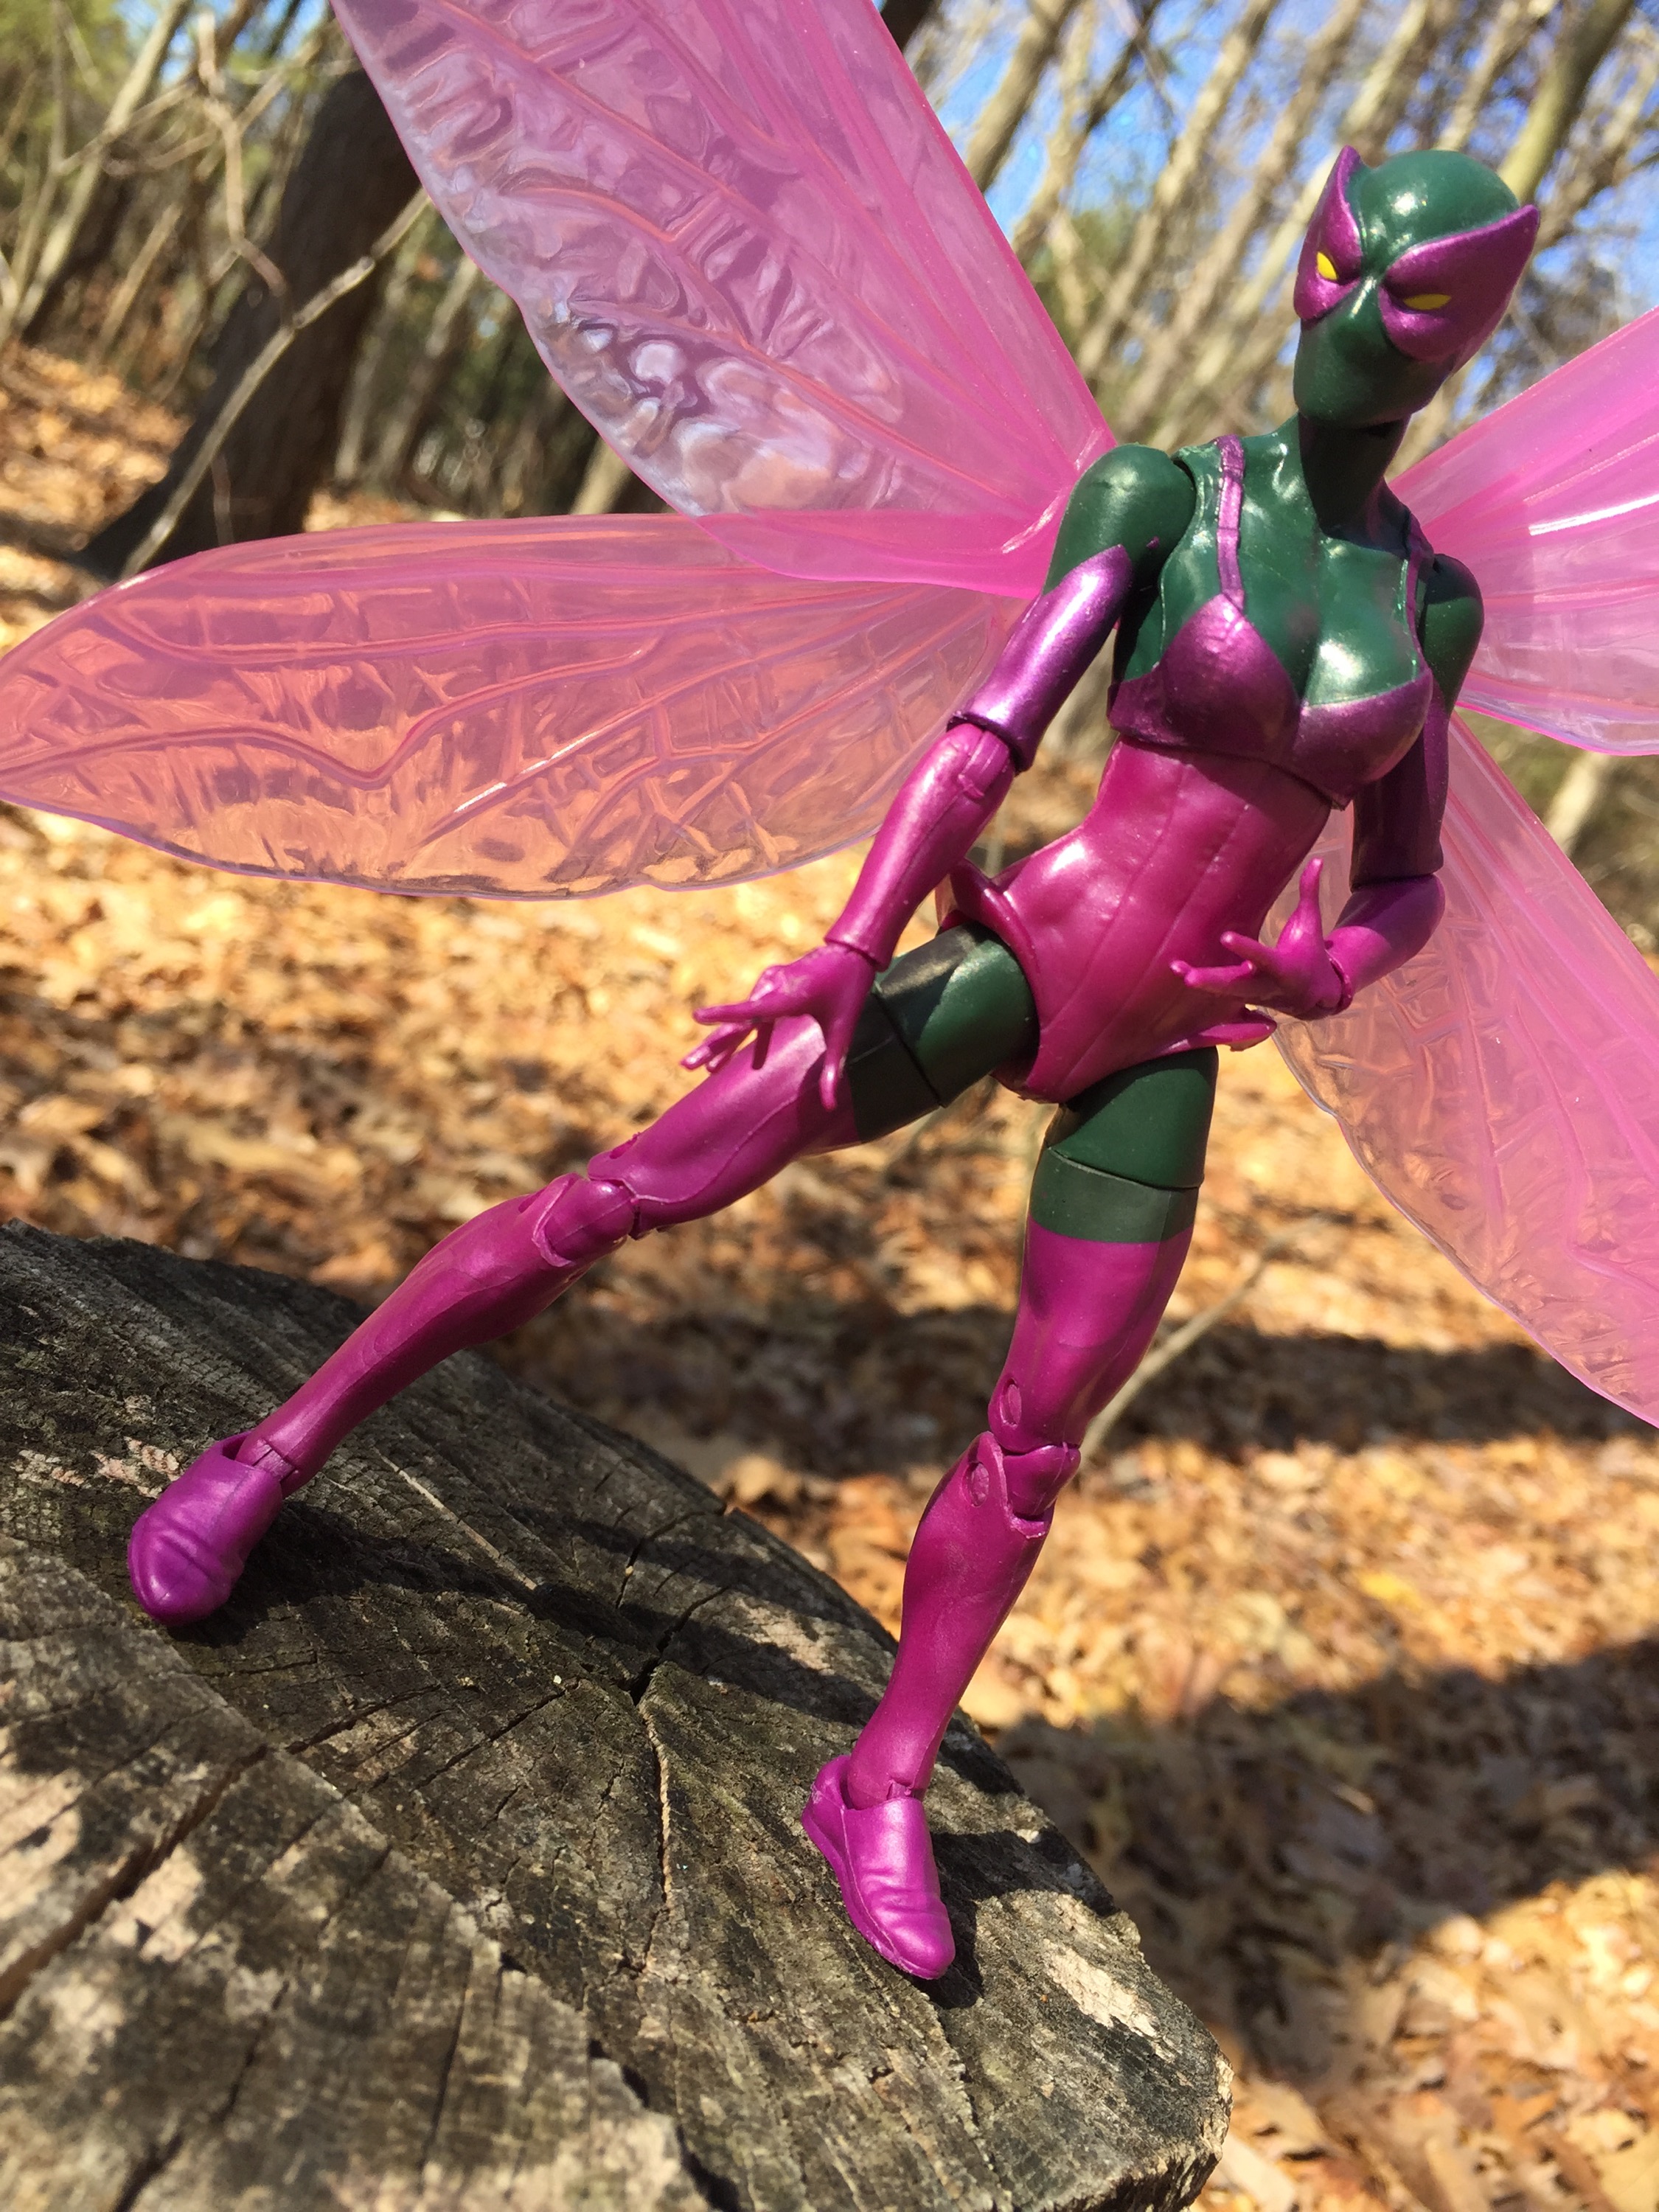 Marvel Legends Beetle 6" Figure Review & Photos (2016